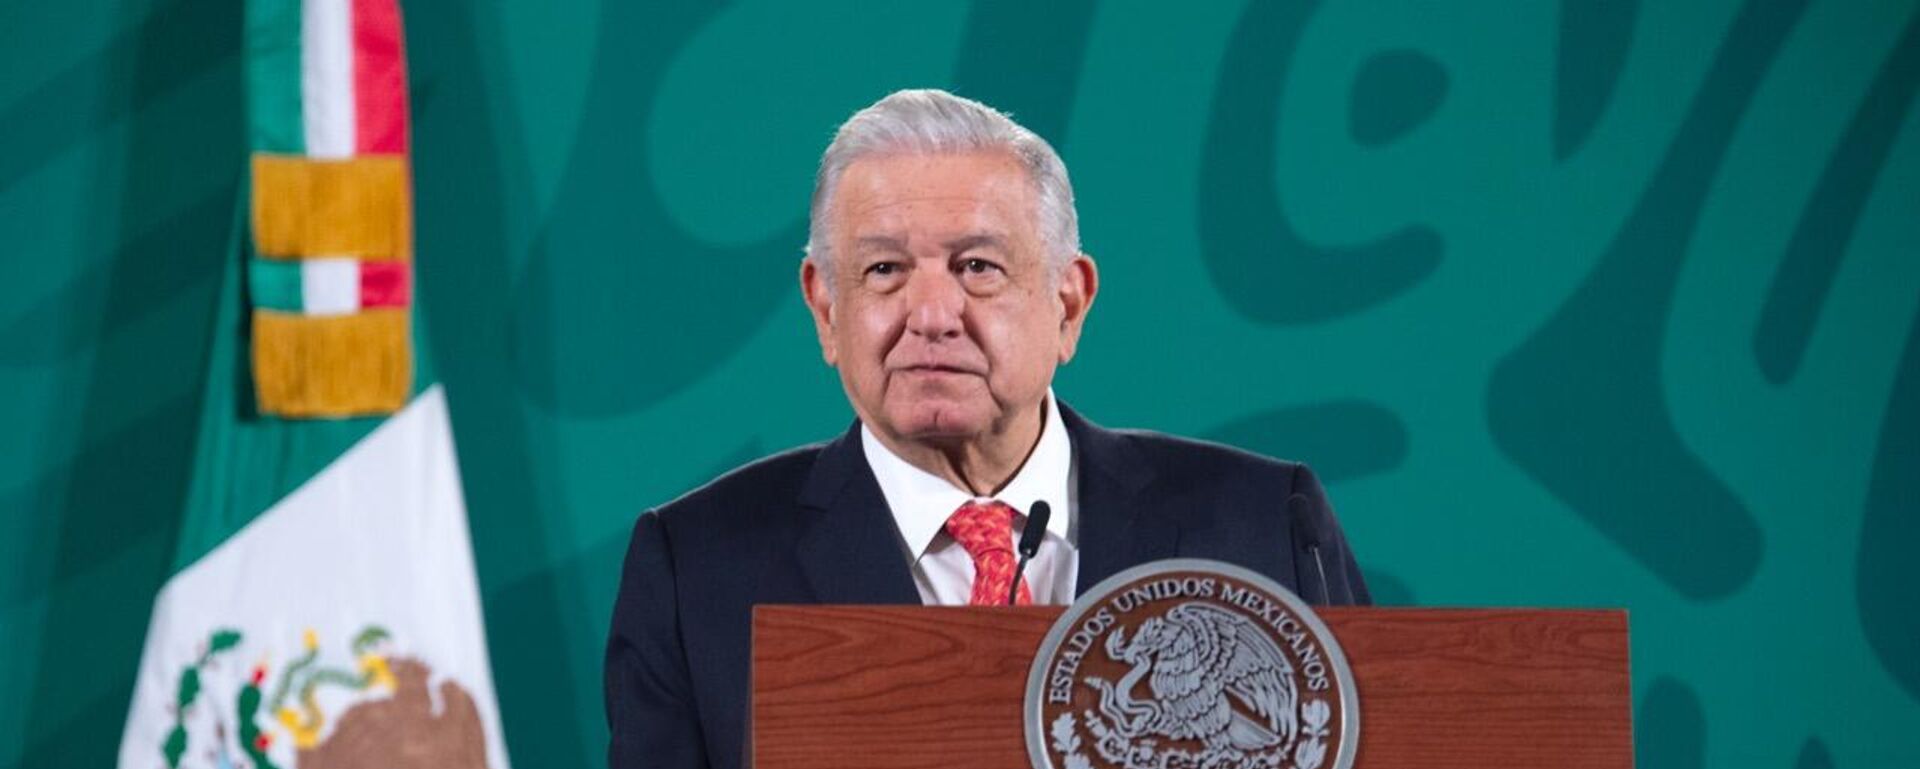 Andrés Manuel López Obrador, presidente de México - Sputnik Mundo, 1920, 20.10.2021